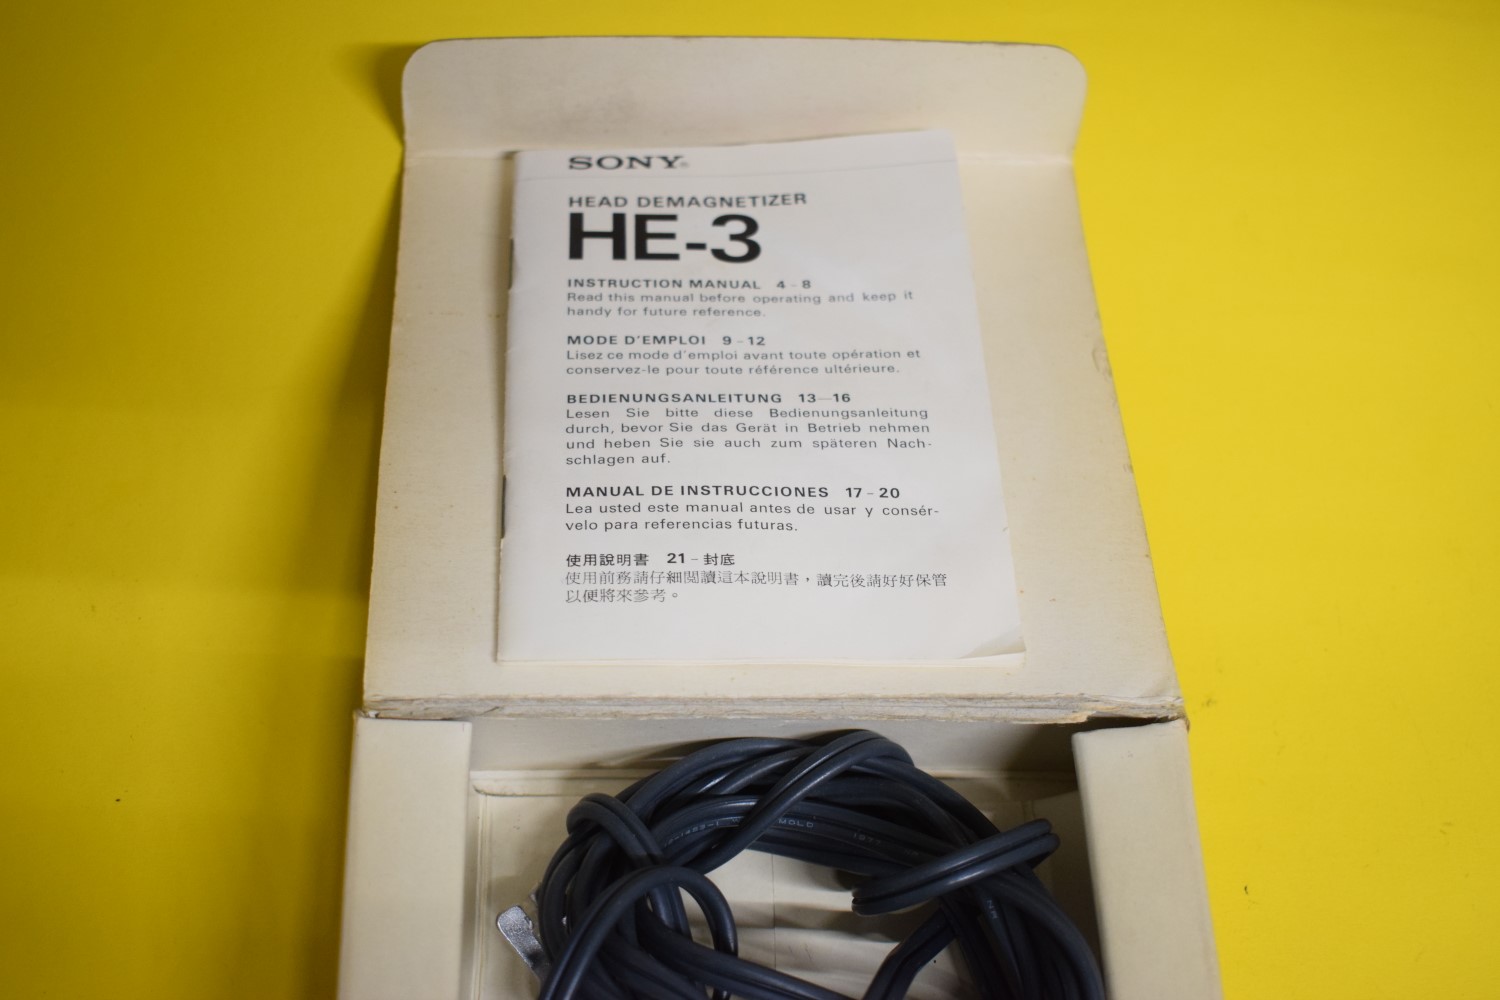 Sony HE-3 Head Demagnetizer